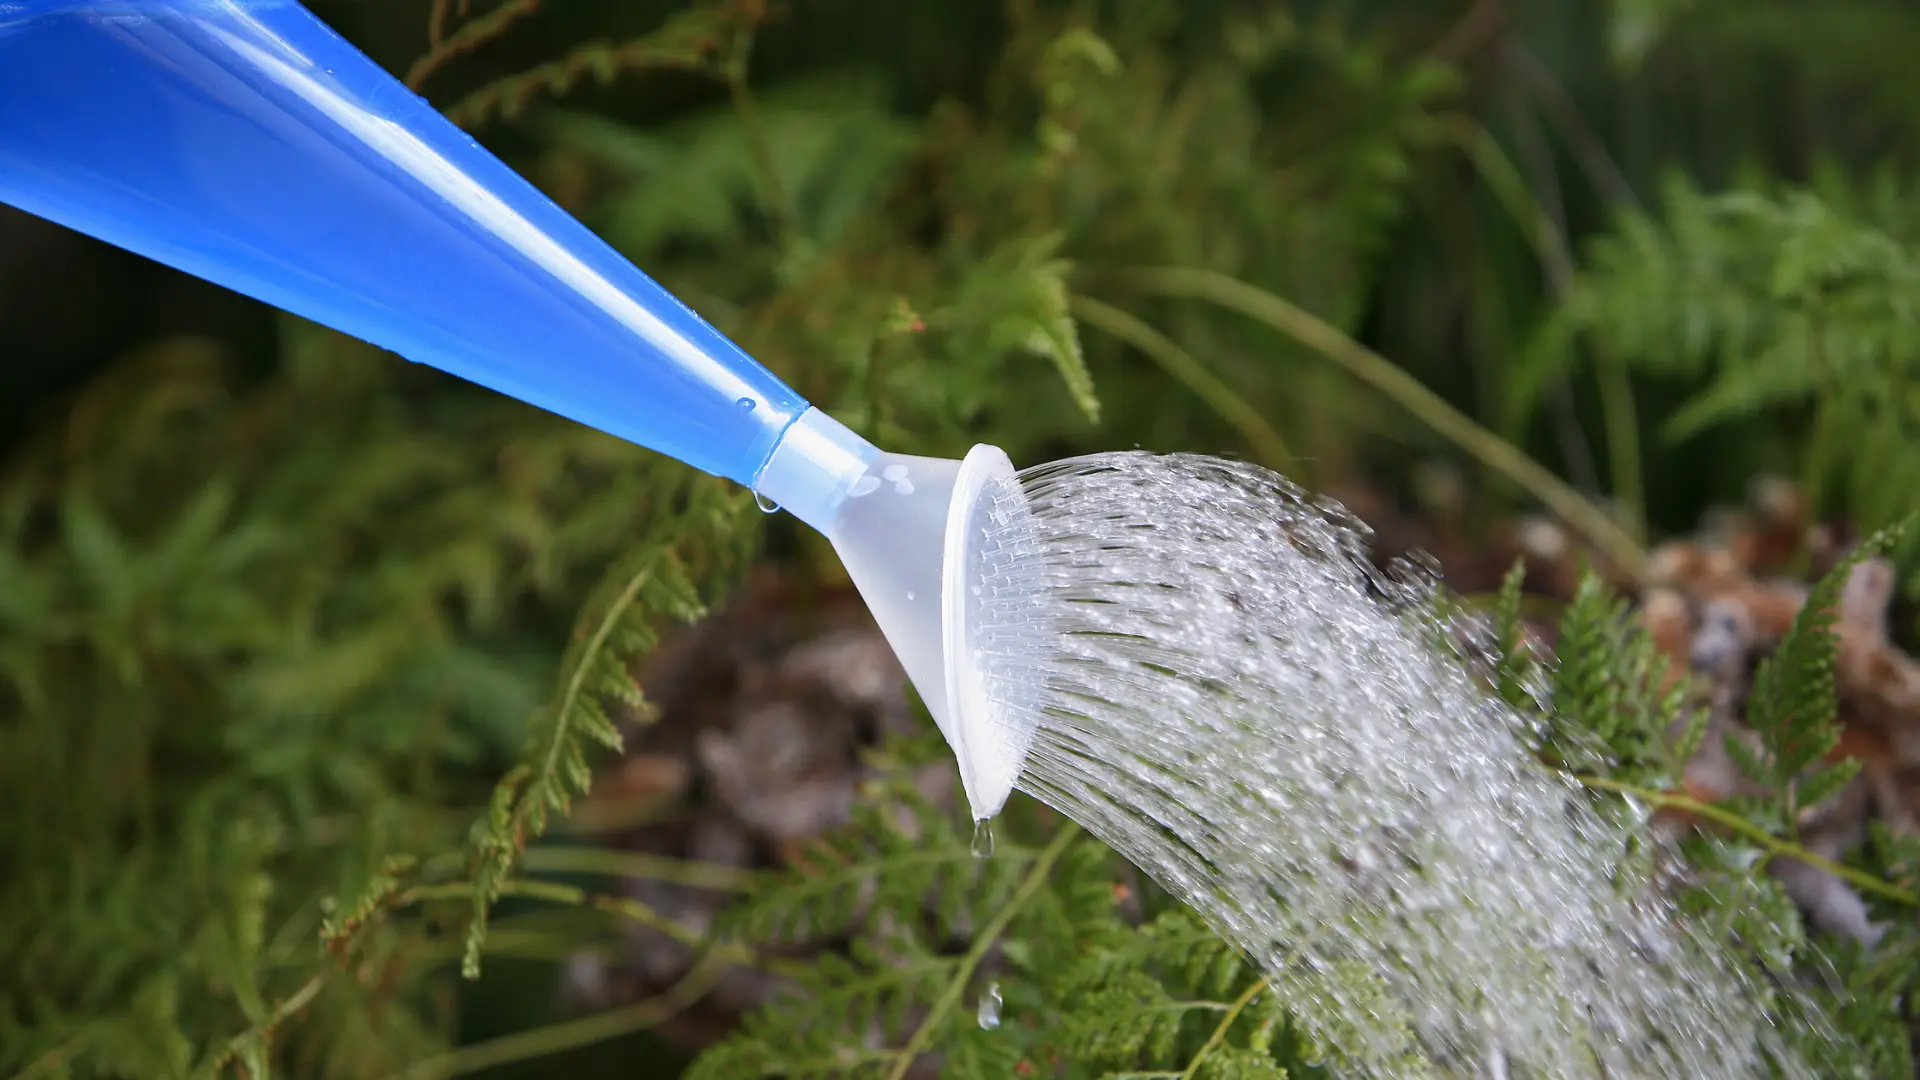 Watering fern